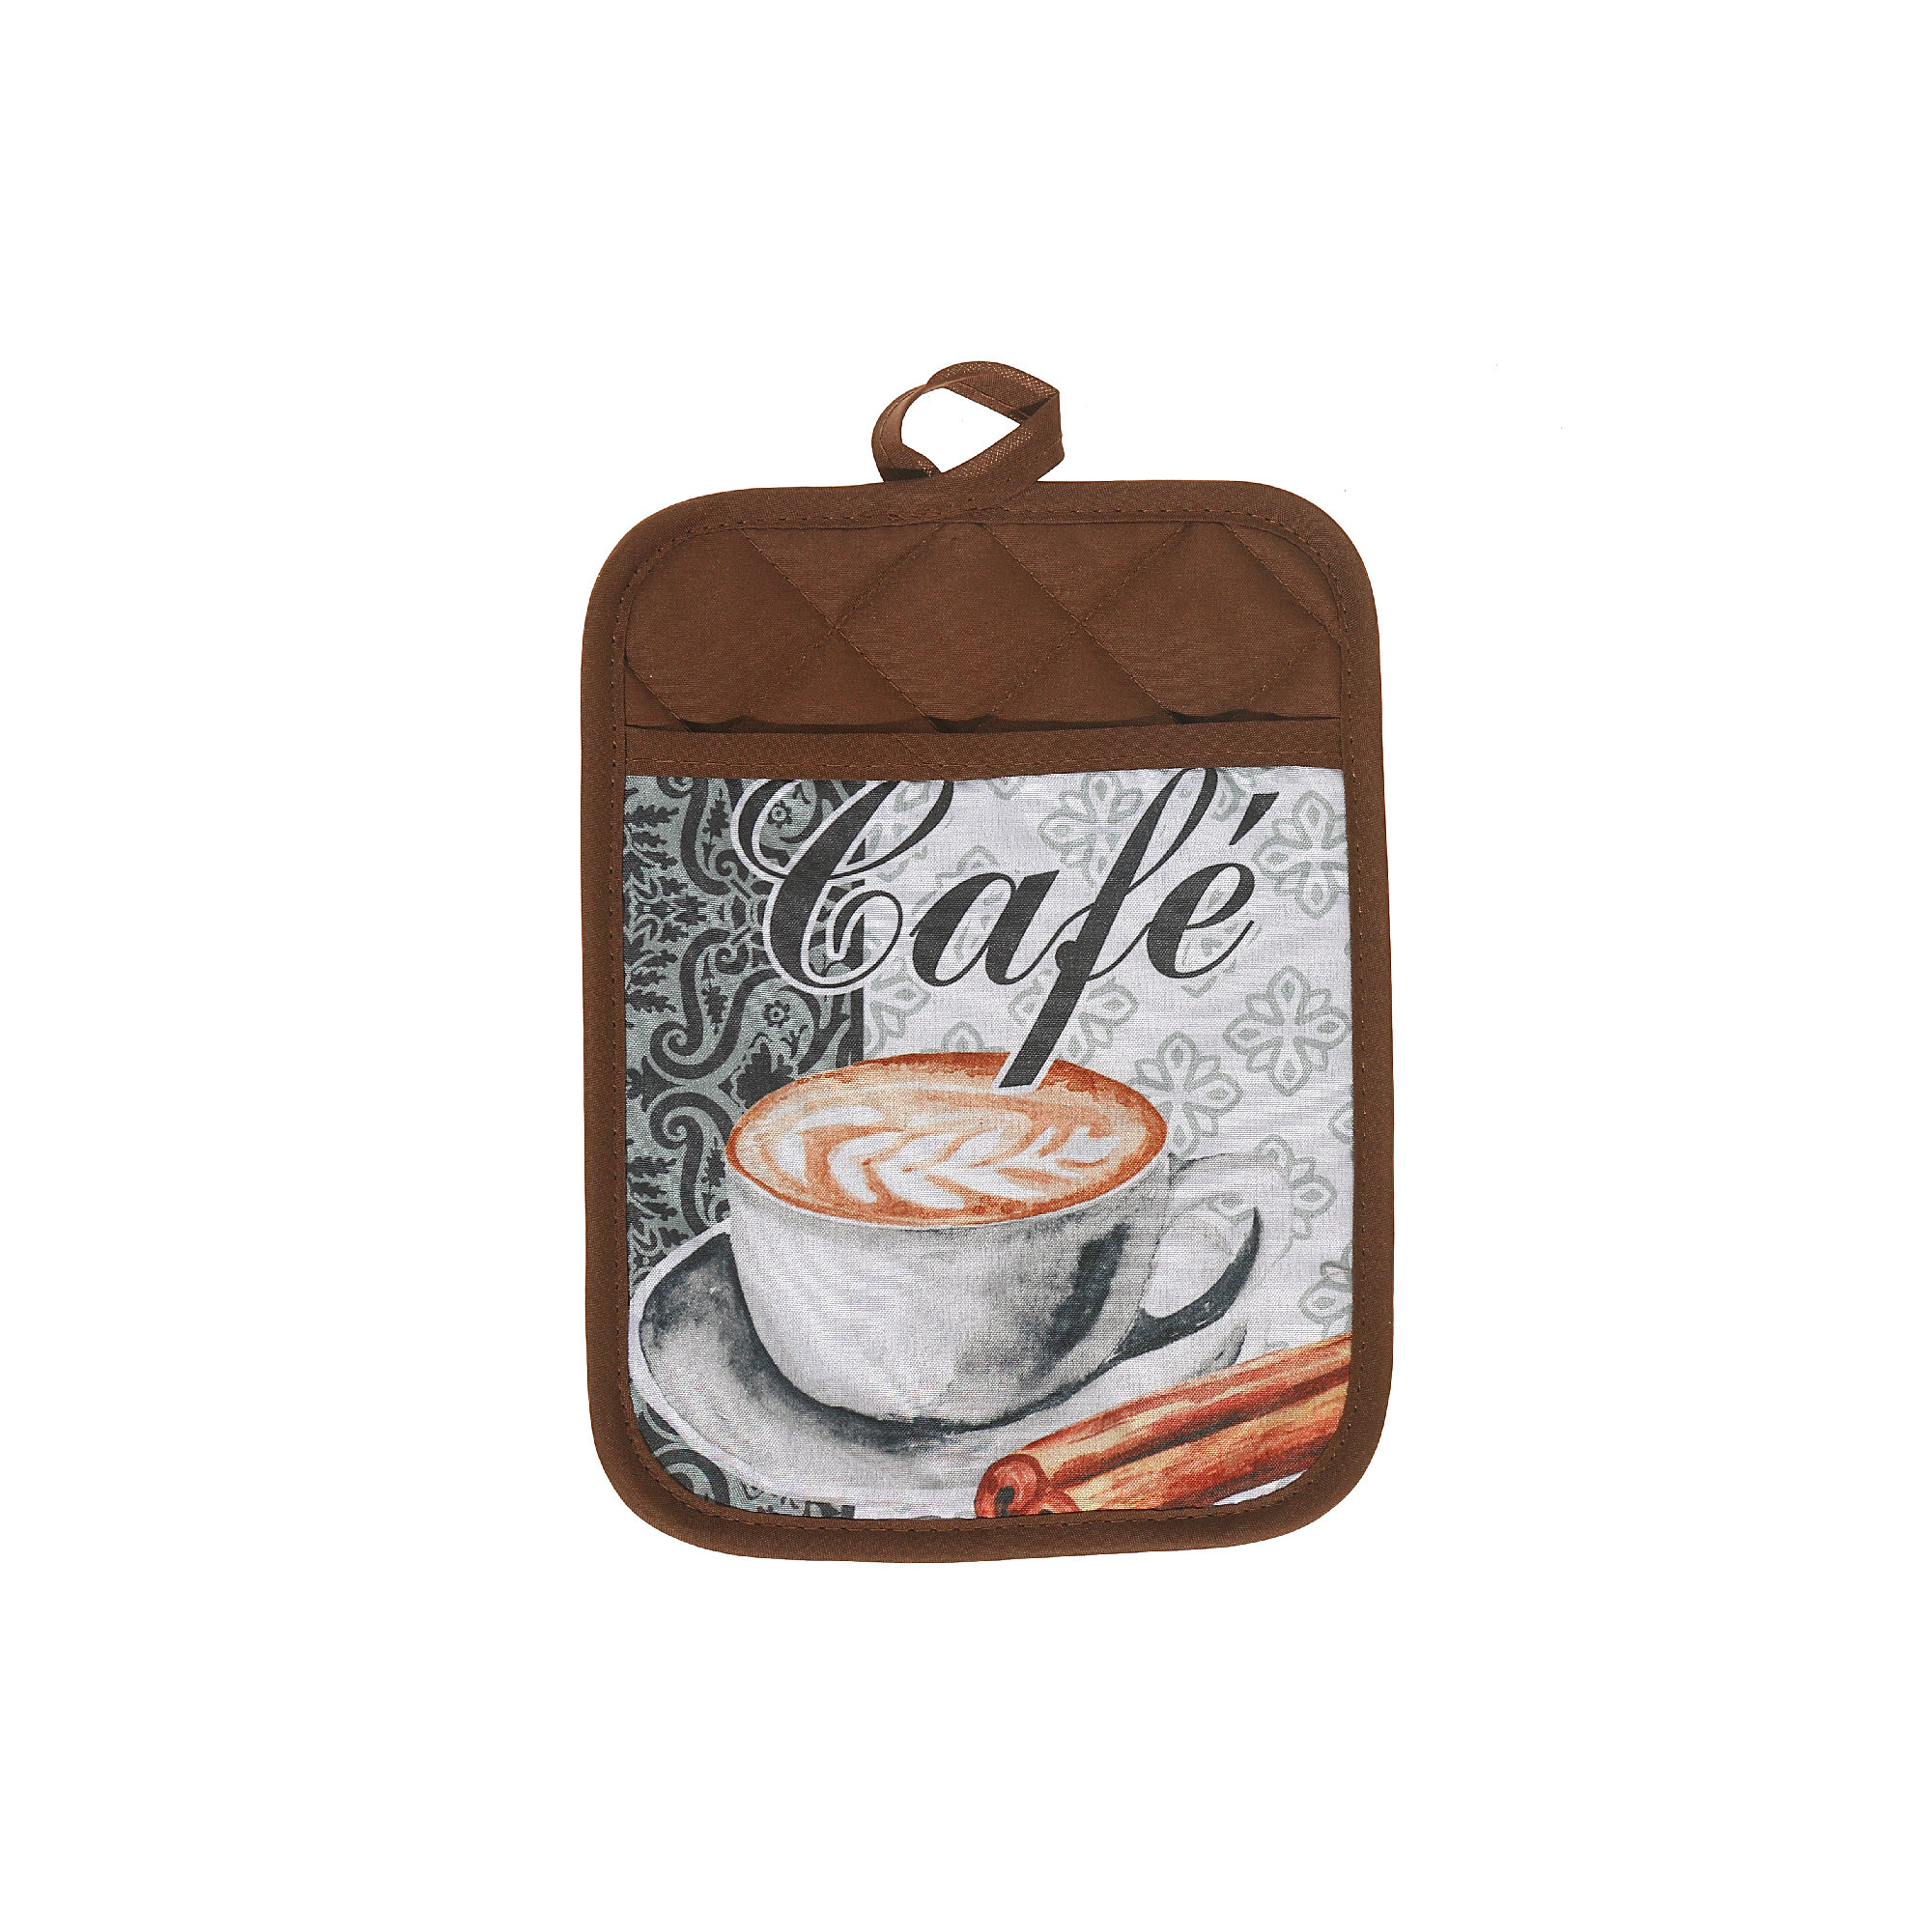 https://assets.wfcdn.com/im/42653009/compr-r85/2108/210856559/pot-holder-with-pocket-cafe-latte-set-of-6.jpg